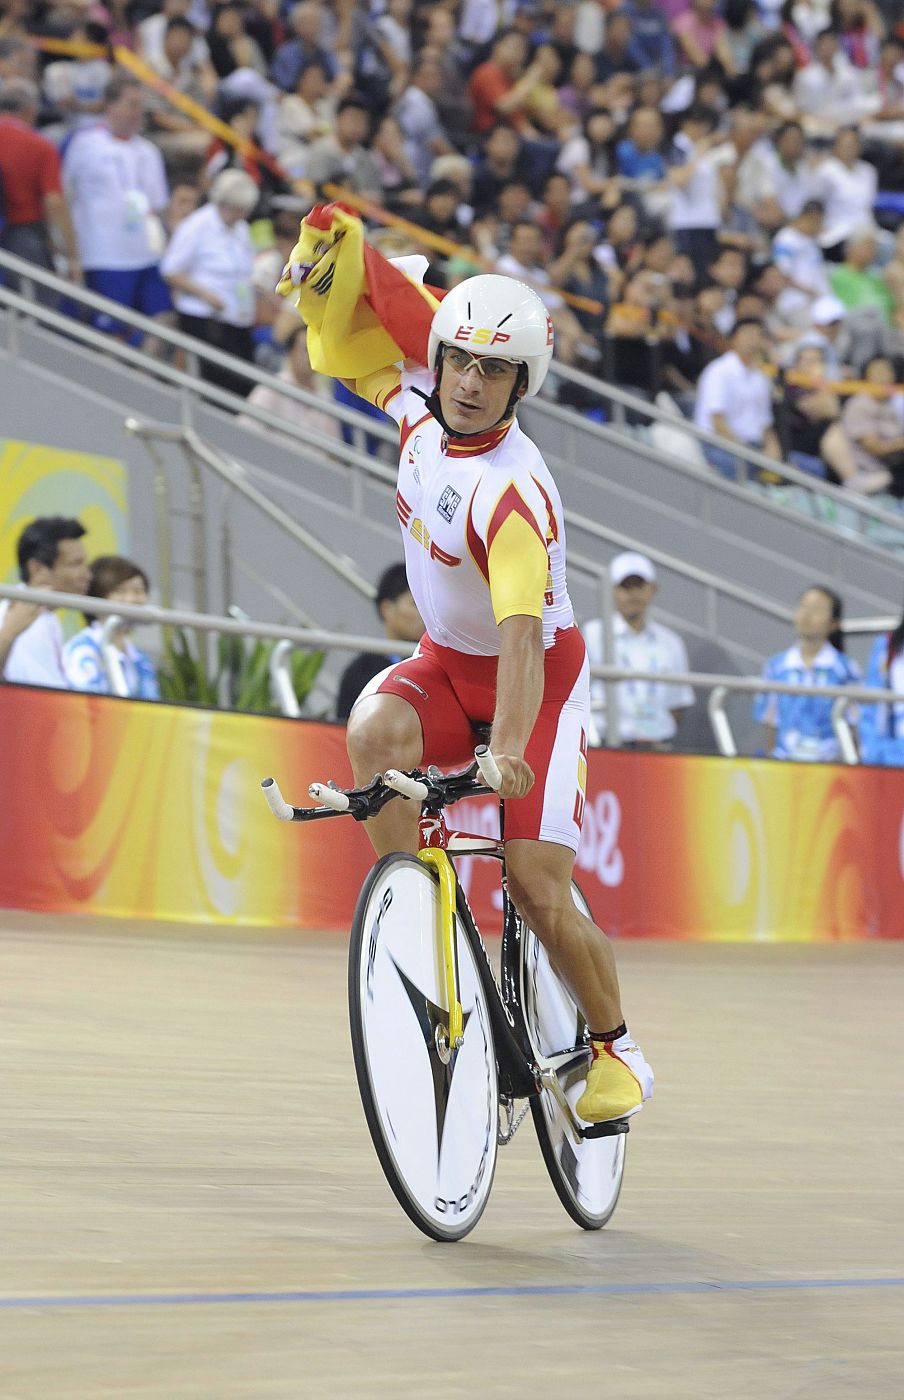 César neira consiguió la primera medalla para España en persecución individual.